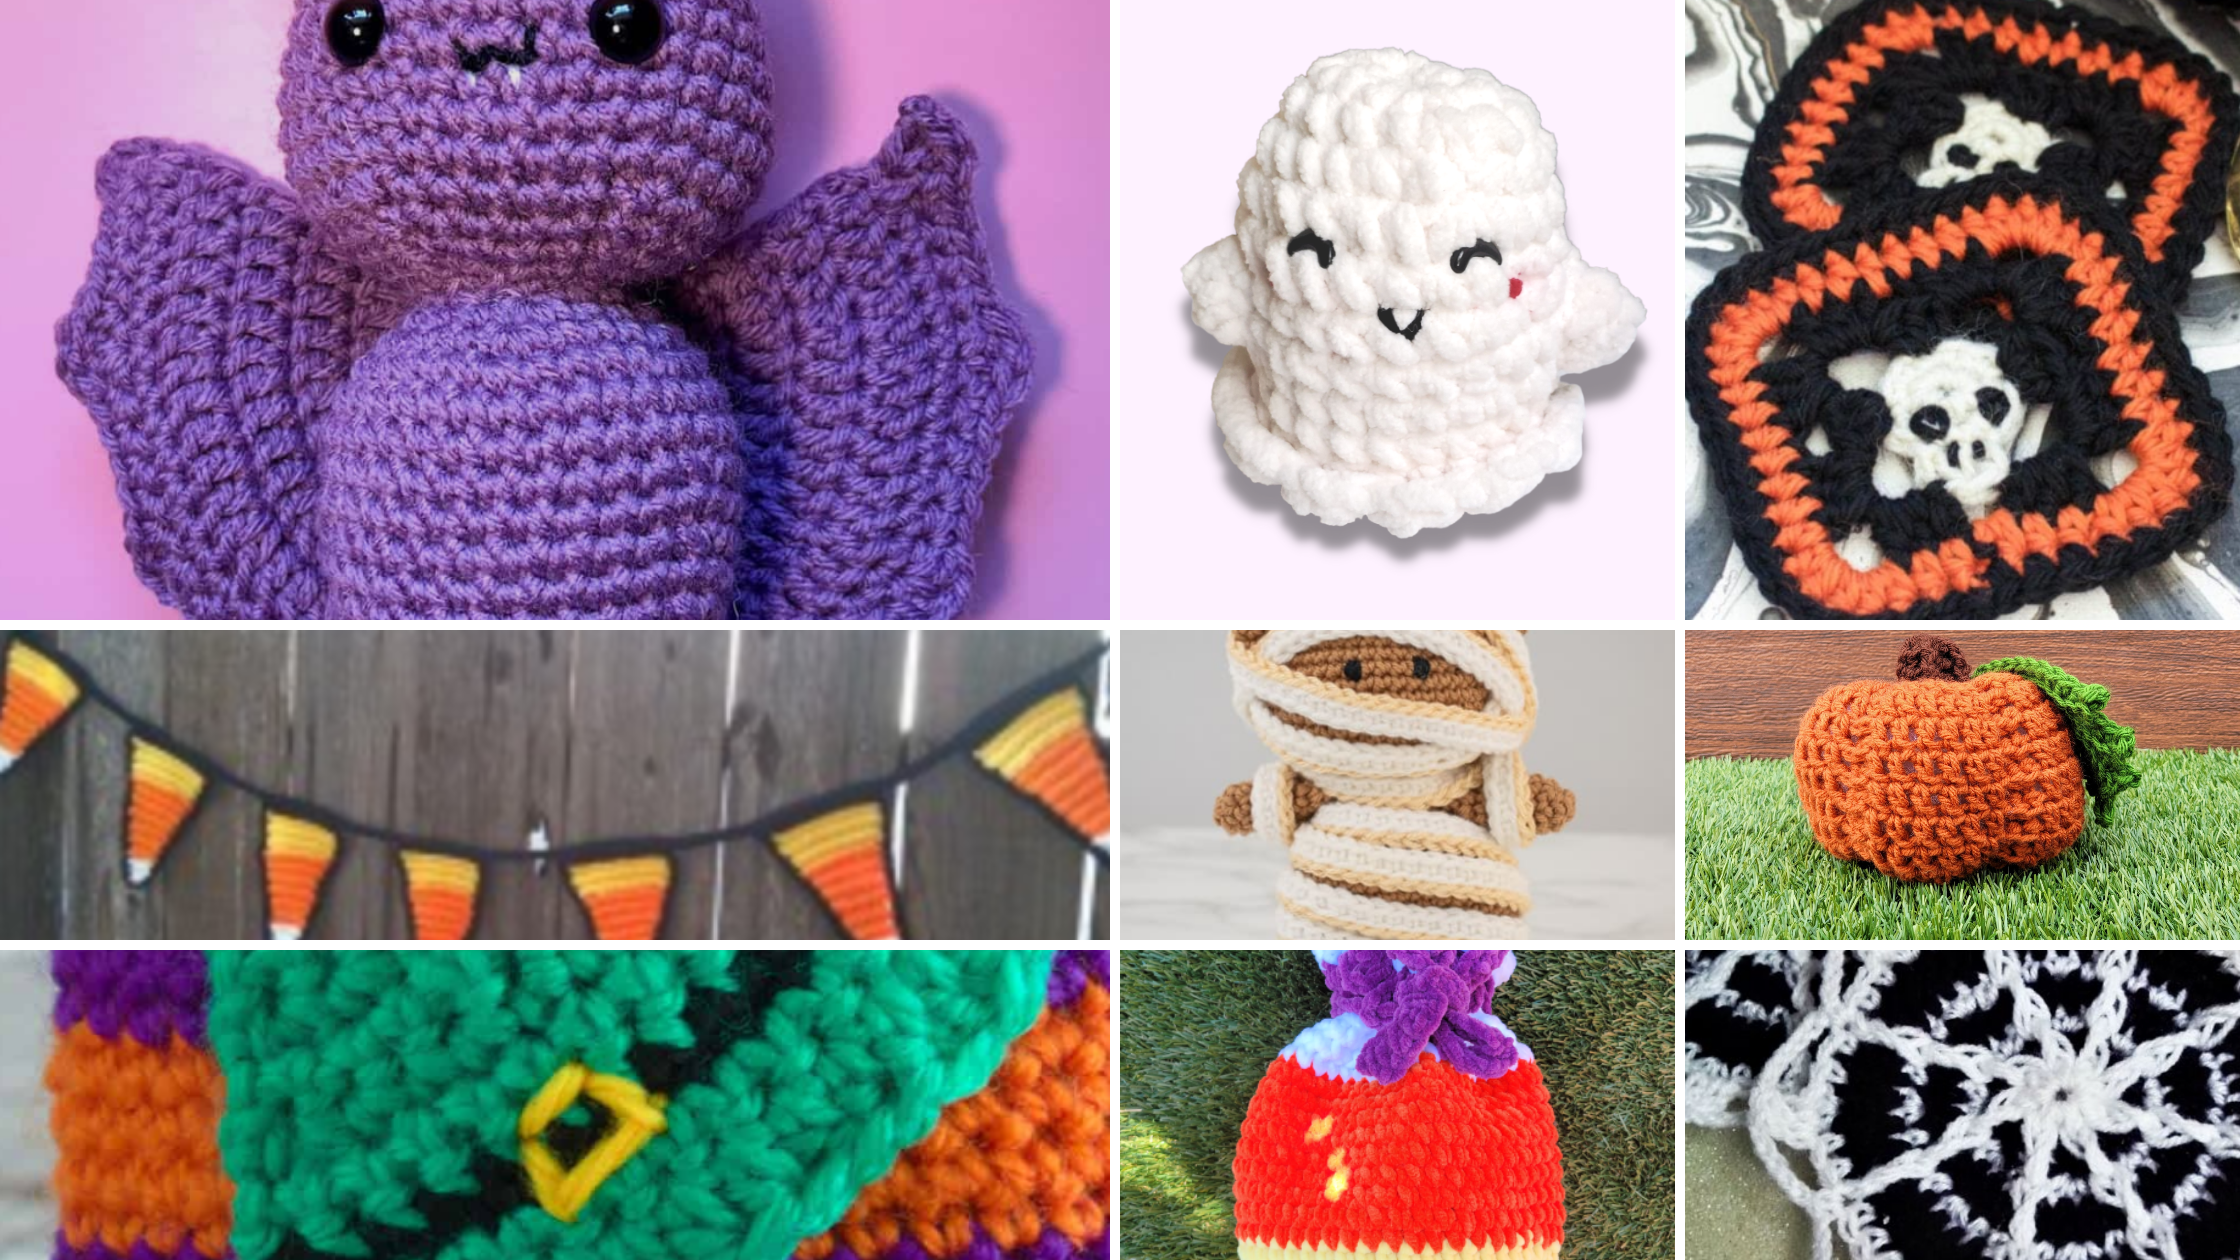 10 Cute & Spooky Crochet Patterns for Halloween